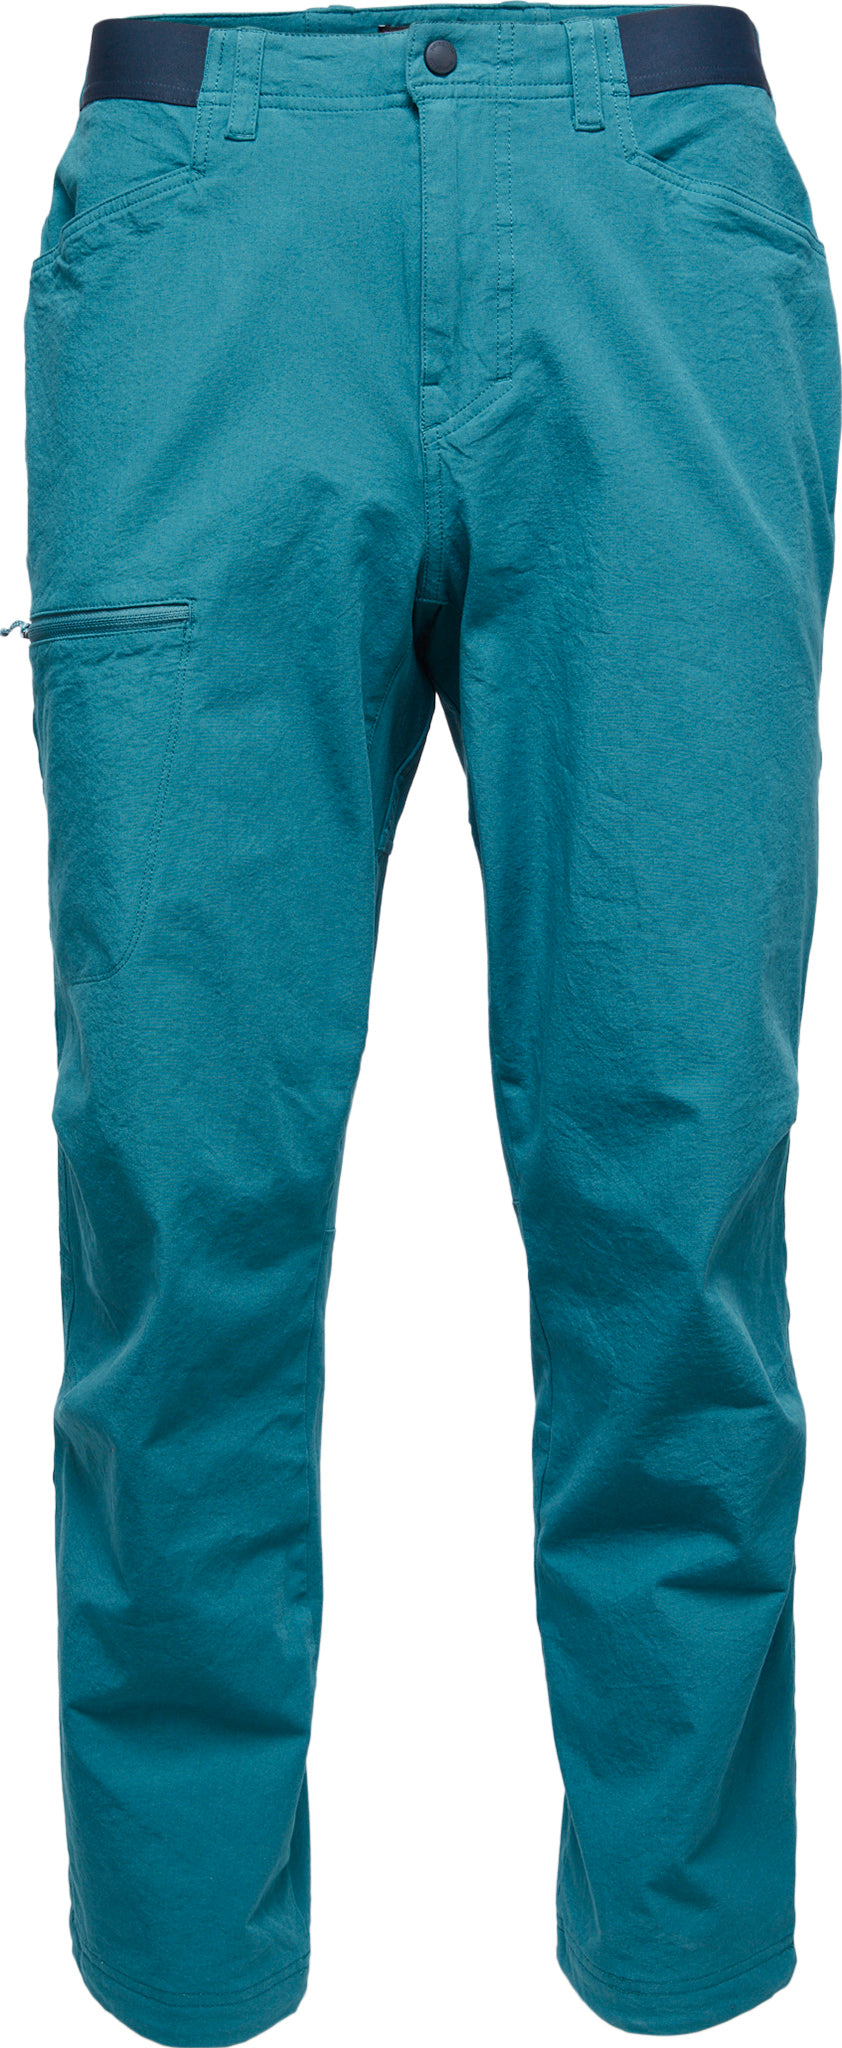 Patagonia M's Venga Rock Pants - Short Men's pants